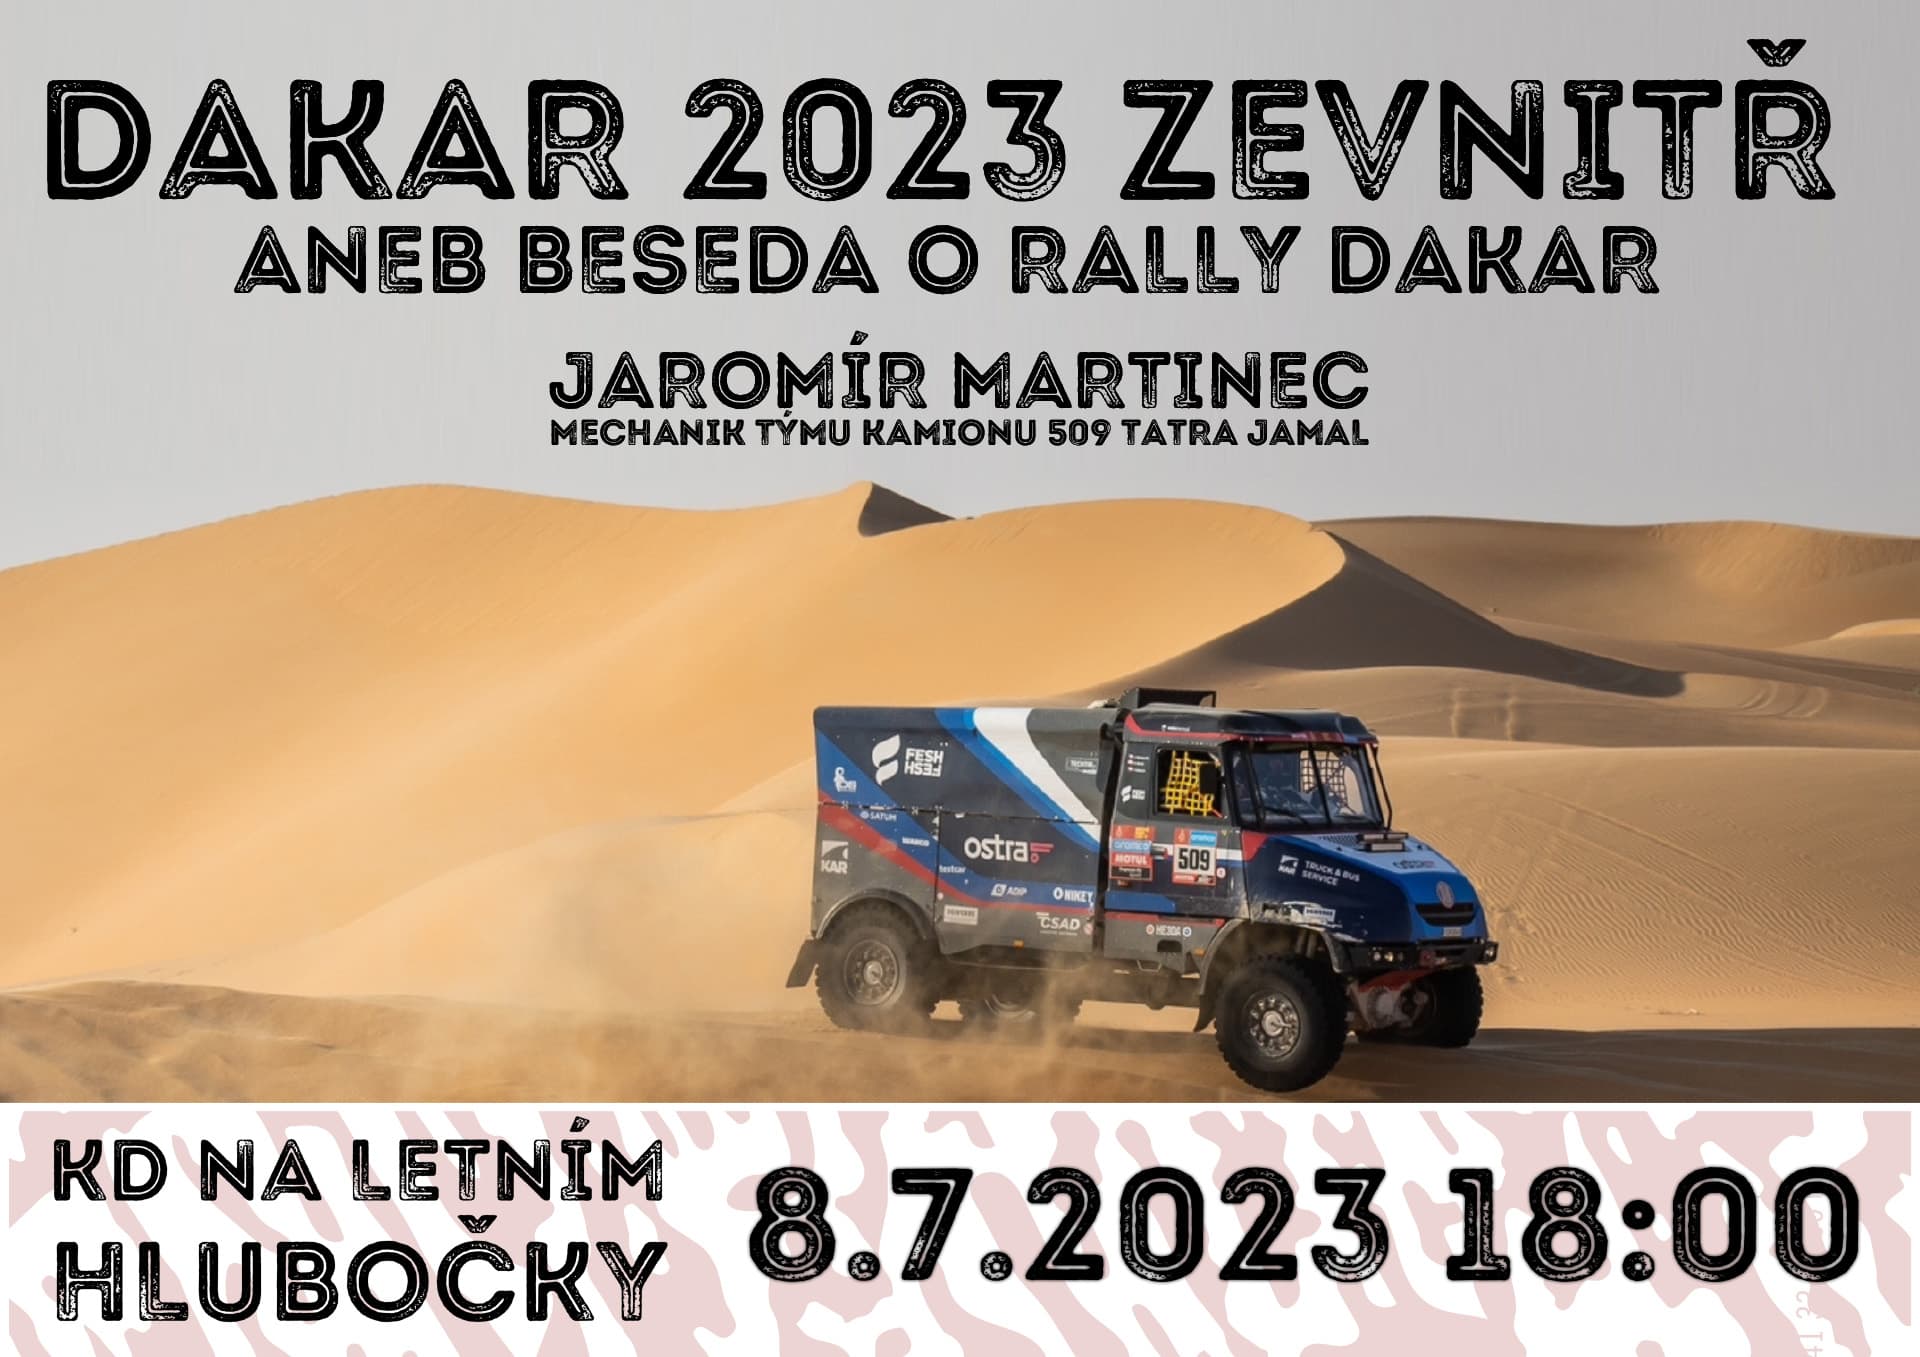 beseda Dakar 2023 zevnitř aneb povídání o Rally Dakar předn